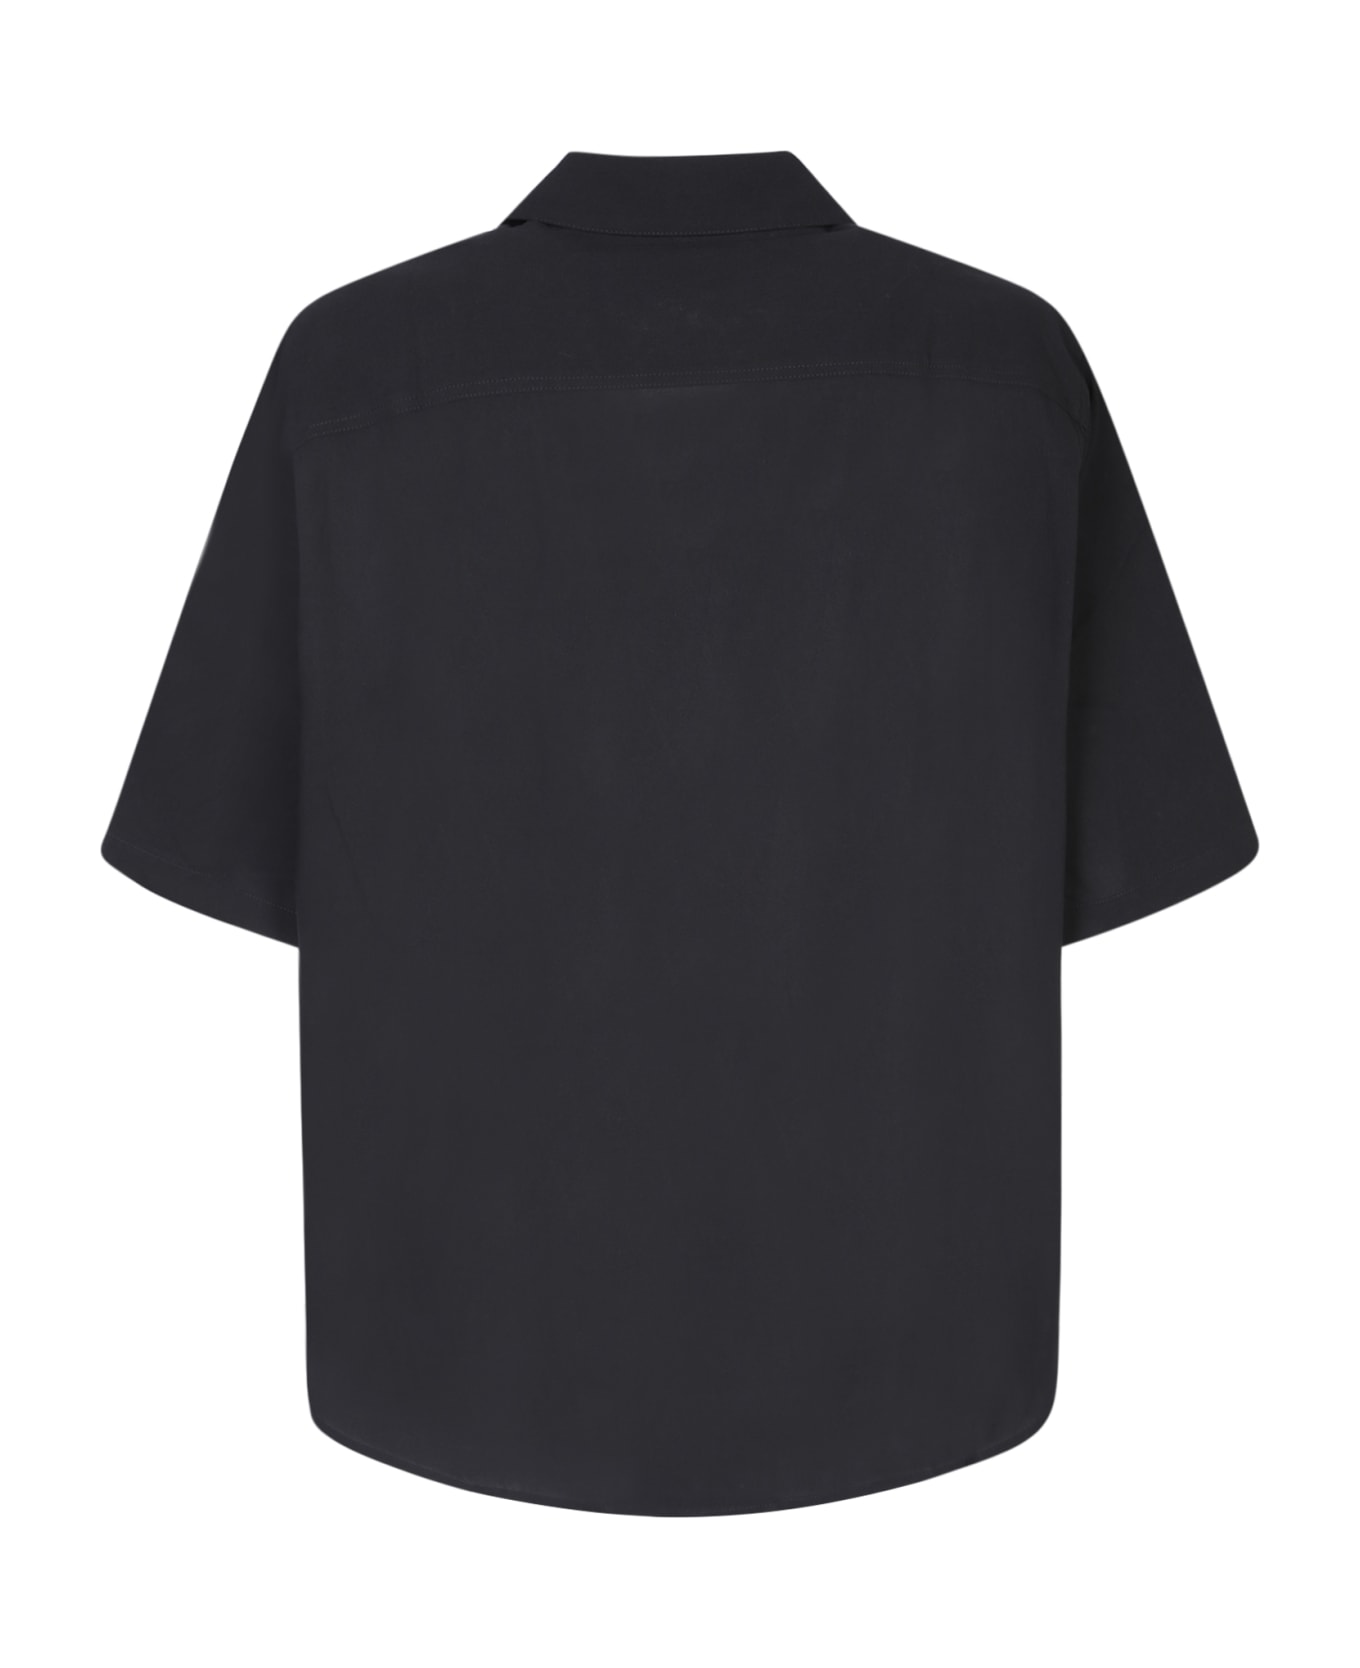 Ami Alexandre Mattiussi Black Cotton Shirt - Black シャツ